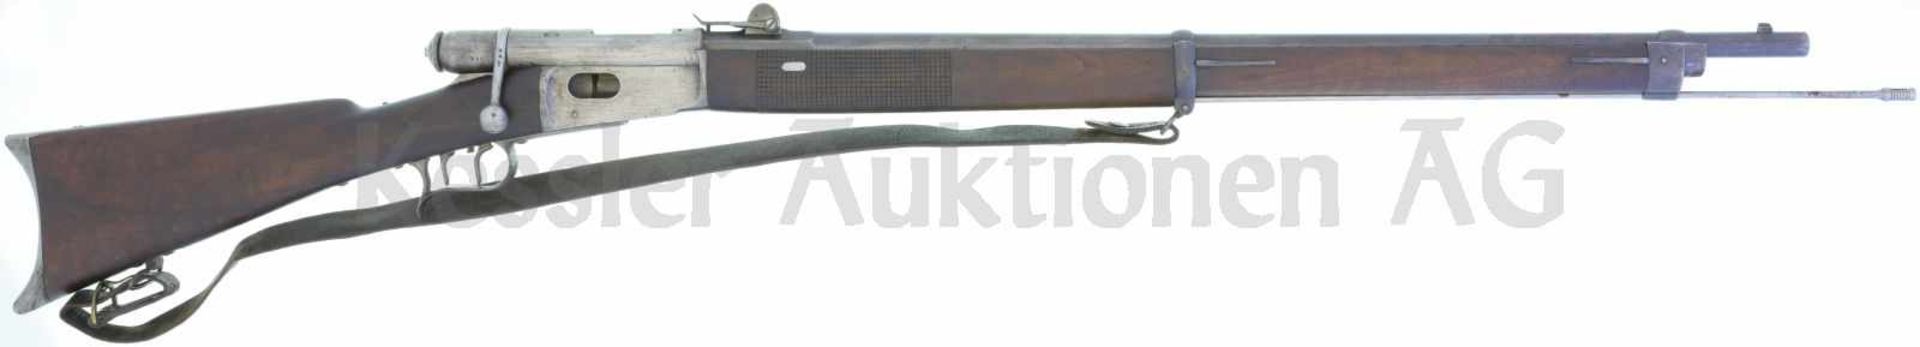 Scharfschützenstutzer, Repetiergewehr Vetterli M 1871, Montierwerkstätte Bern, Kal. 10.4mmVetterli